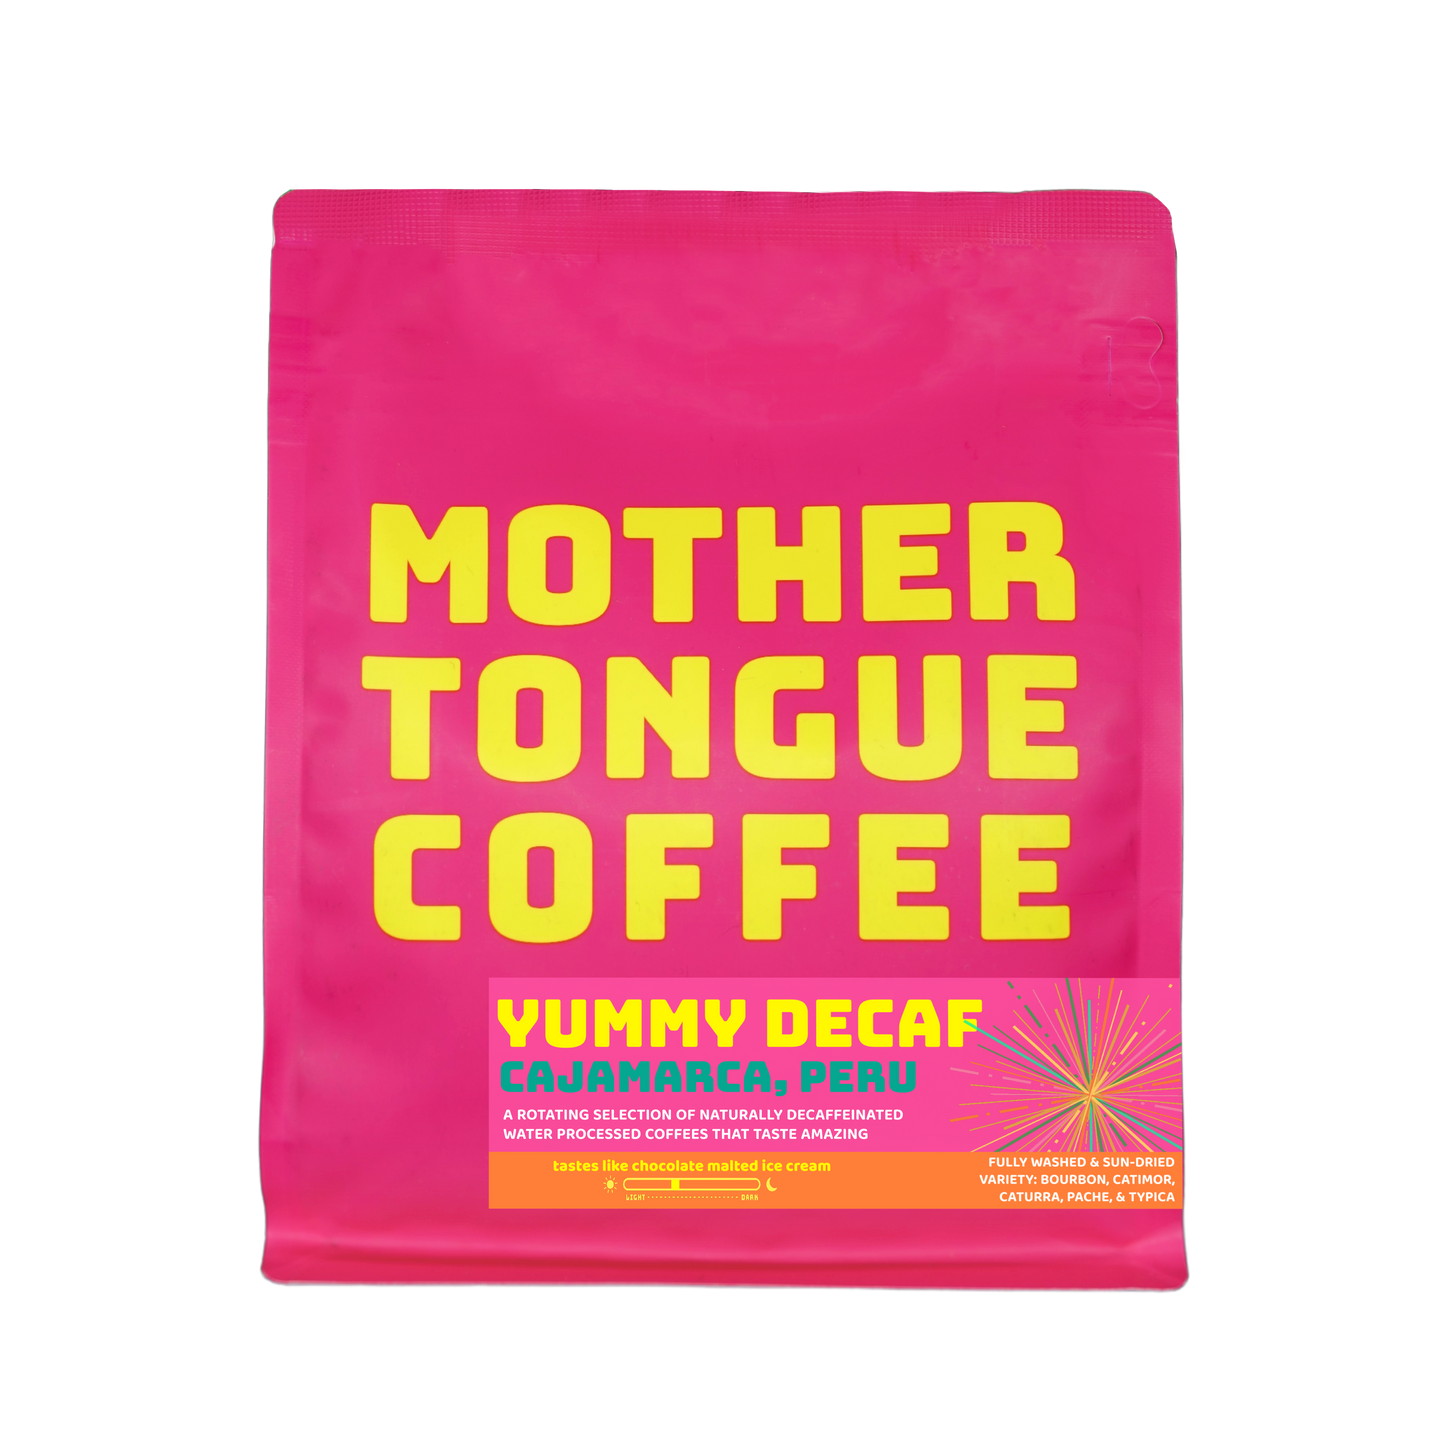 YUMMY DECAF - Cajamarca Peru - Mother Tongue Coffee